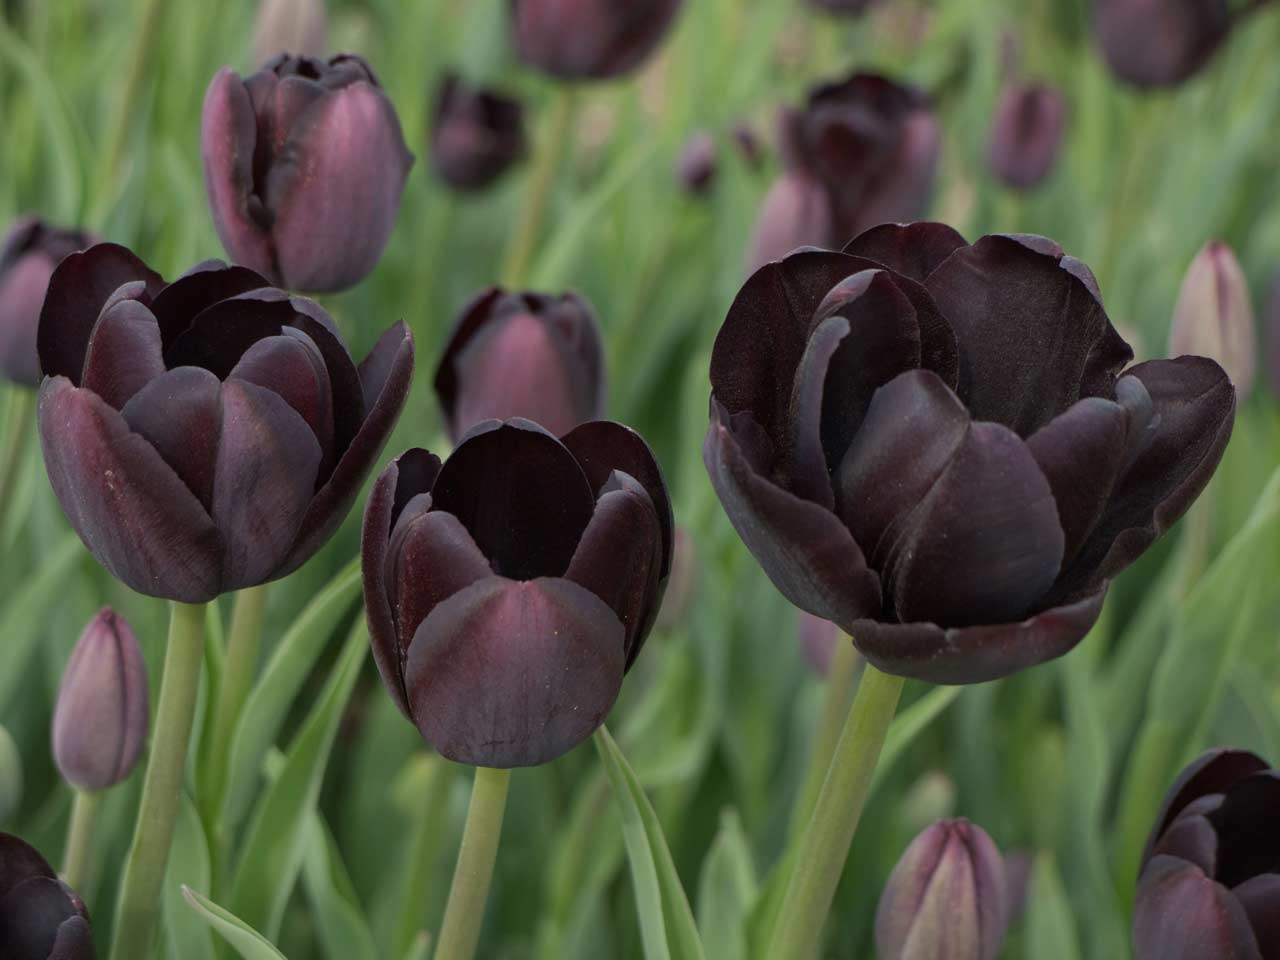 Black 'Dark Night' tulips